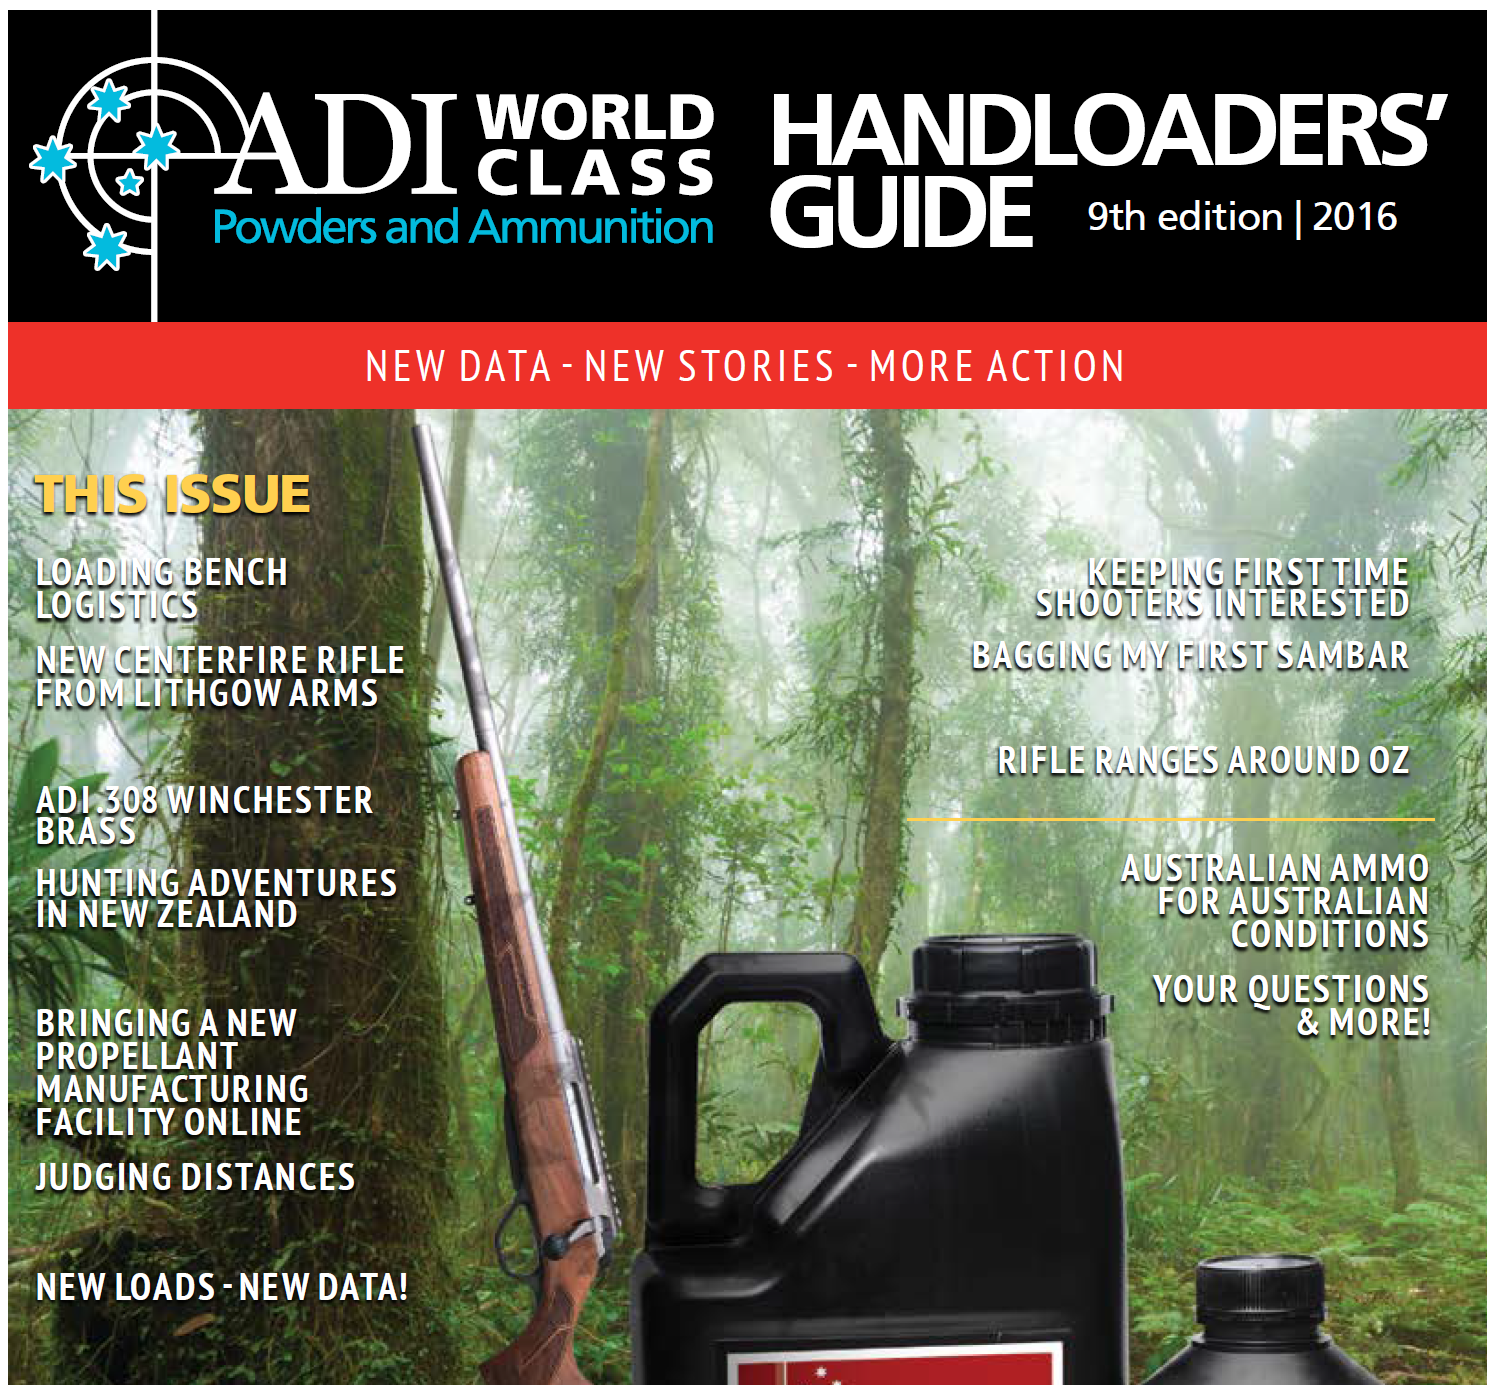 ADI Handloaders guide 2016